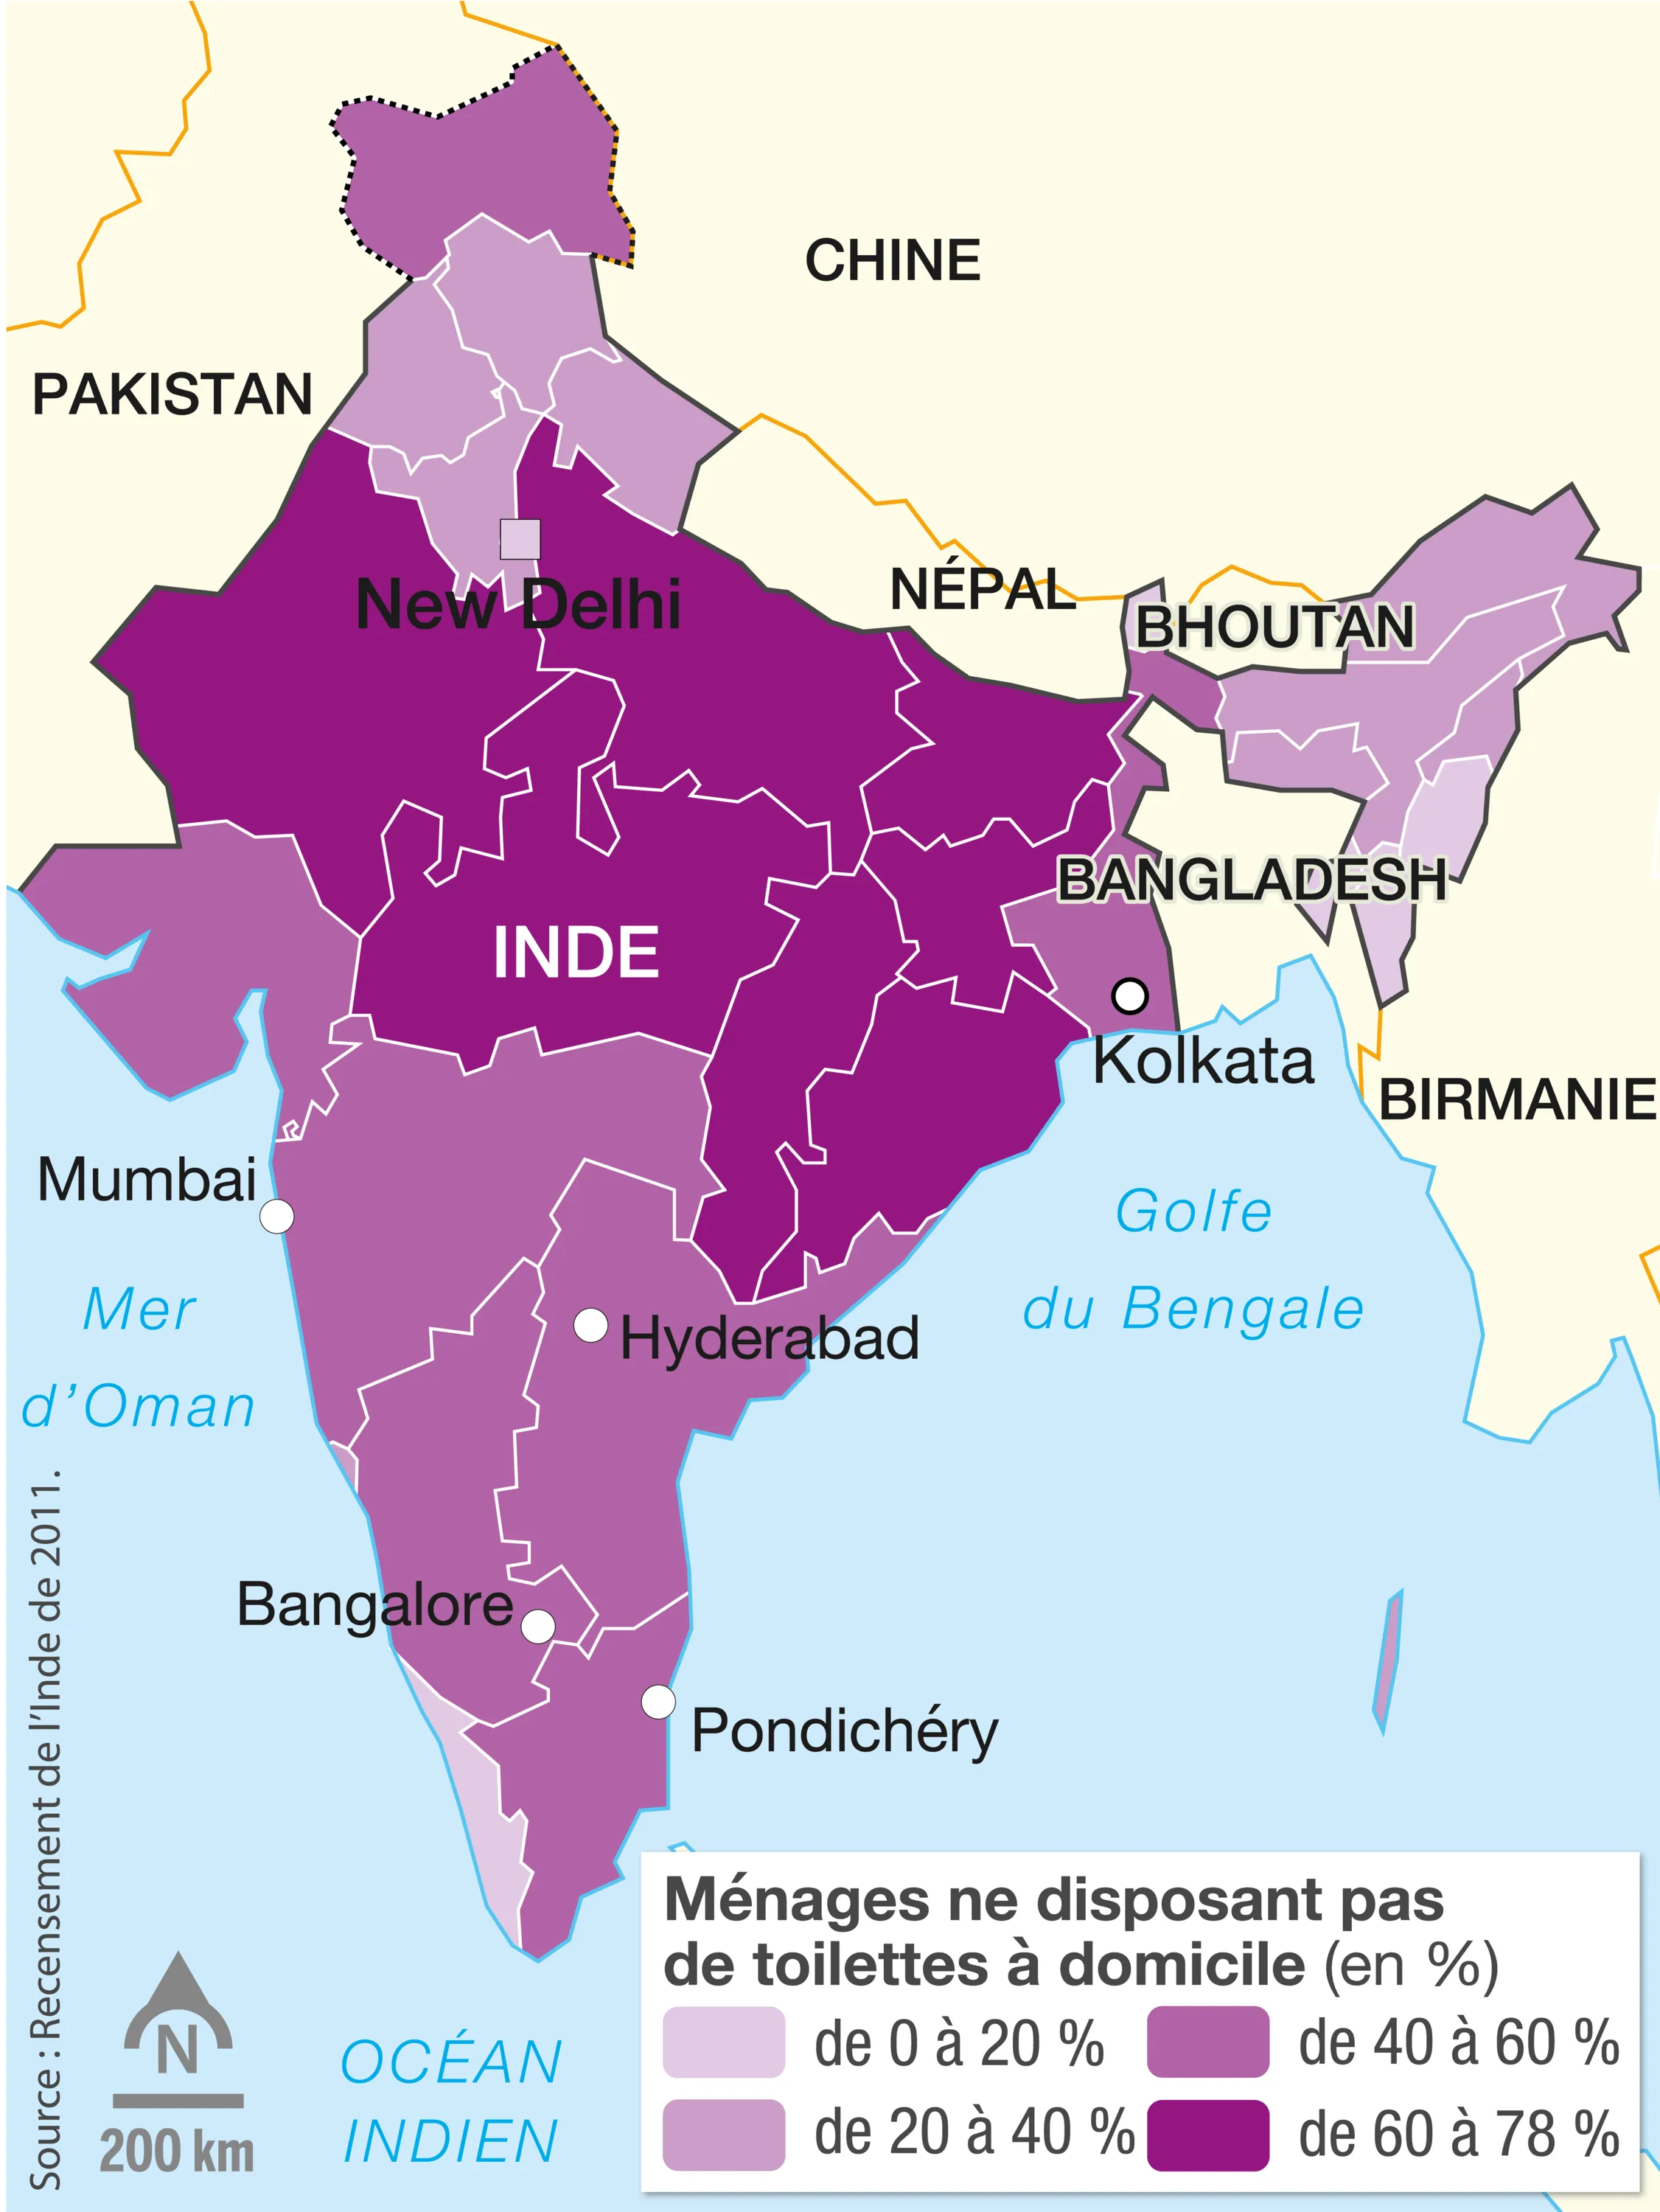 L'accès aux toilettes en Inde